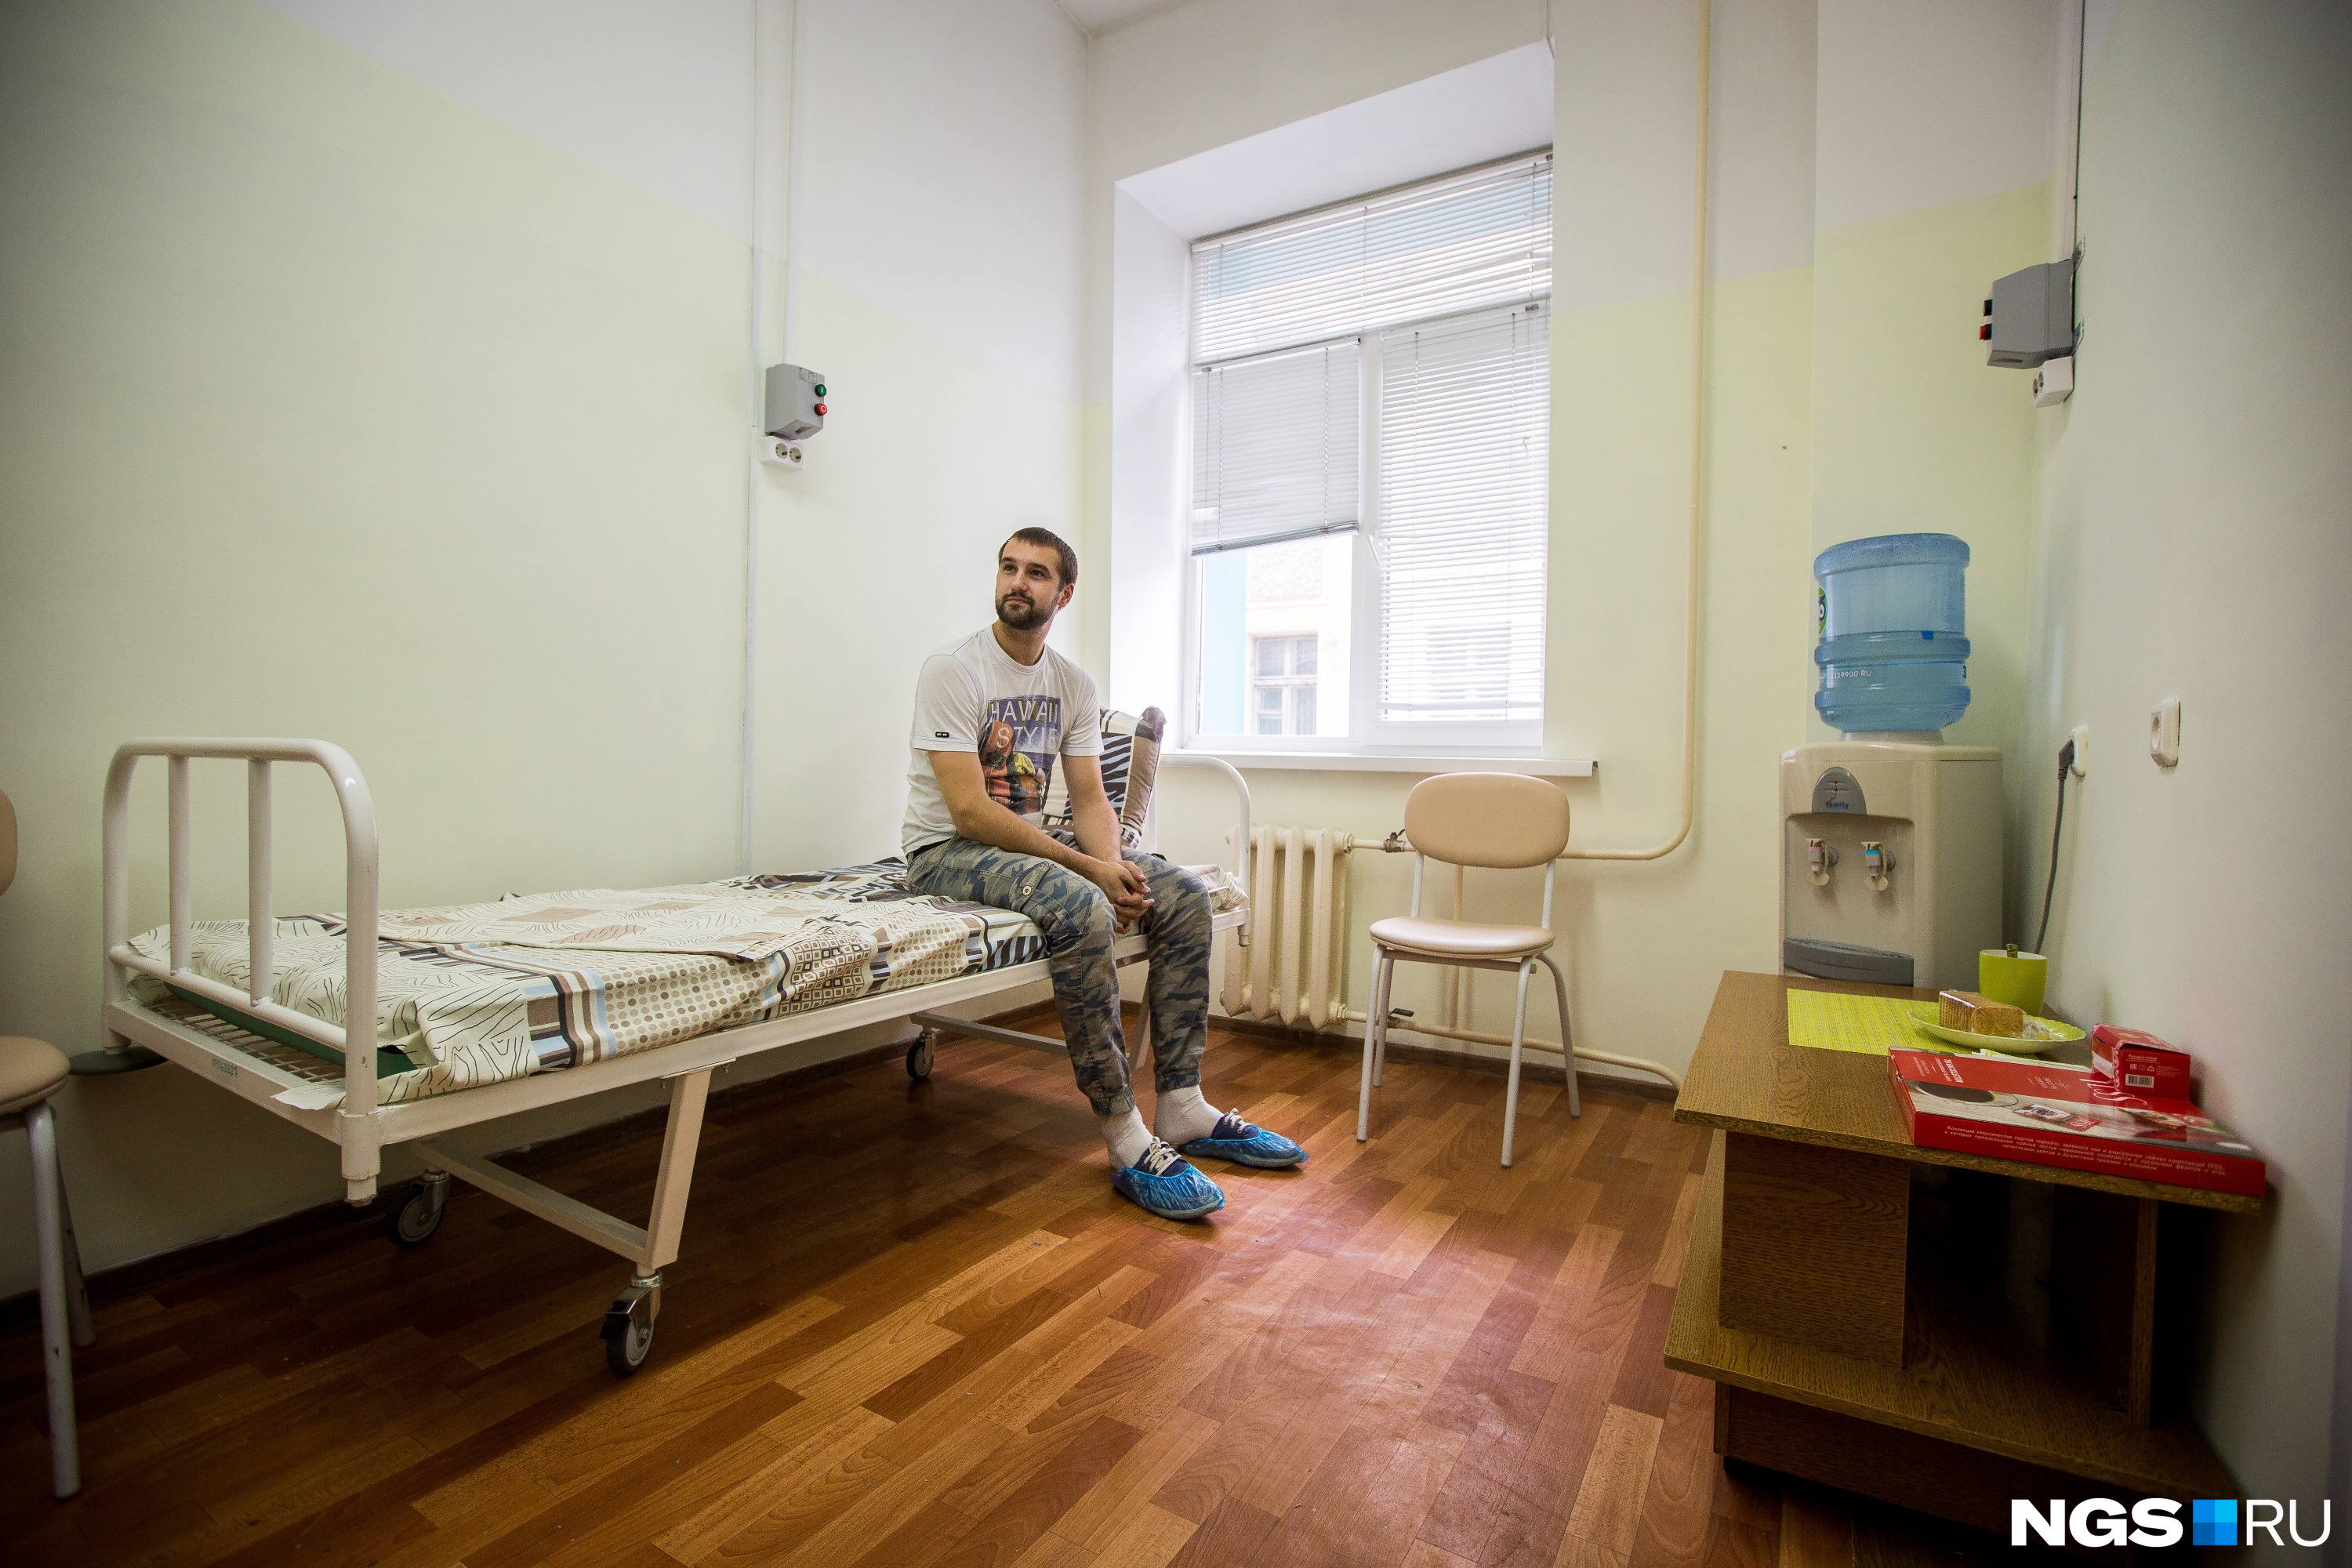 Пациенты получают медицинскую помощь бесплатно по ОМС. На фото — пациент из Новосибирска, ждущий операции по удалению липом (образований из жировой ткани)